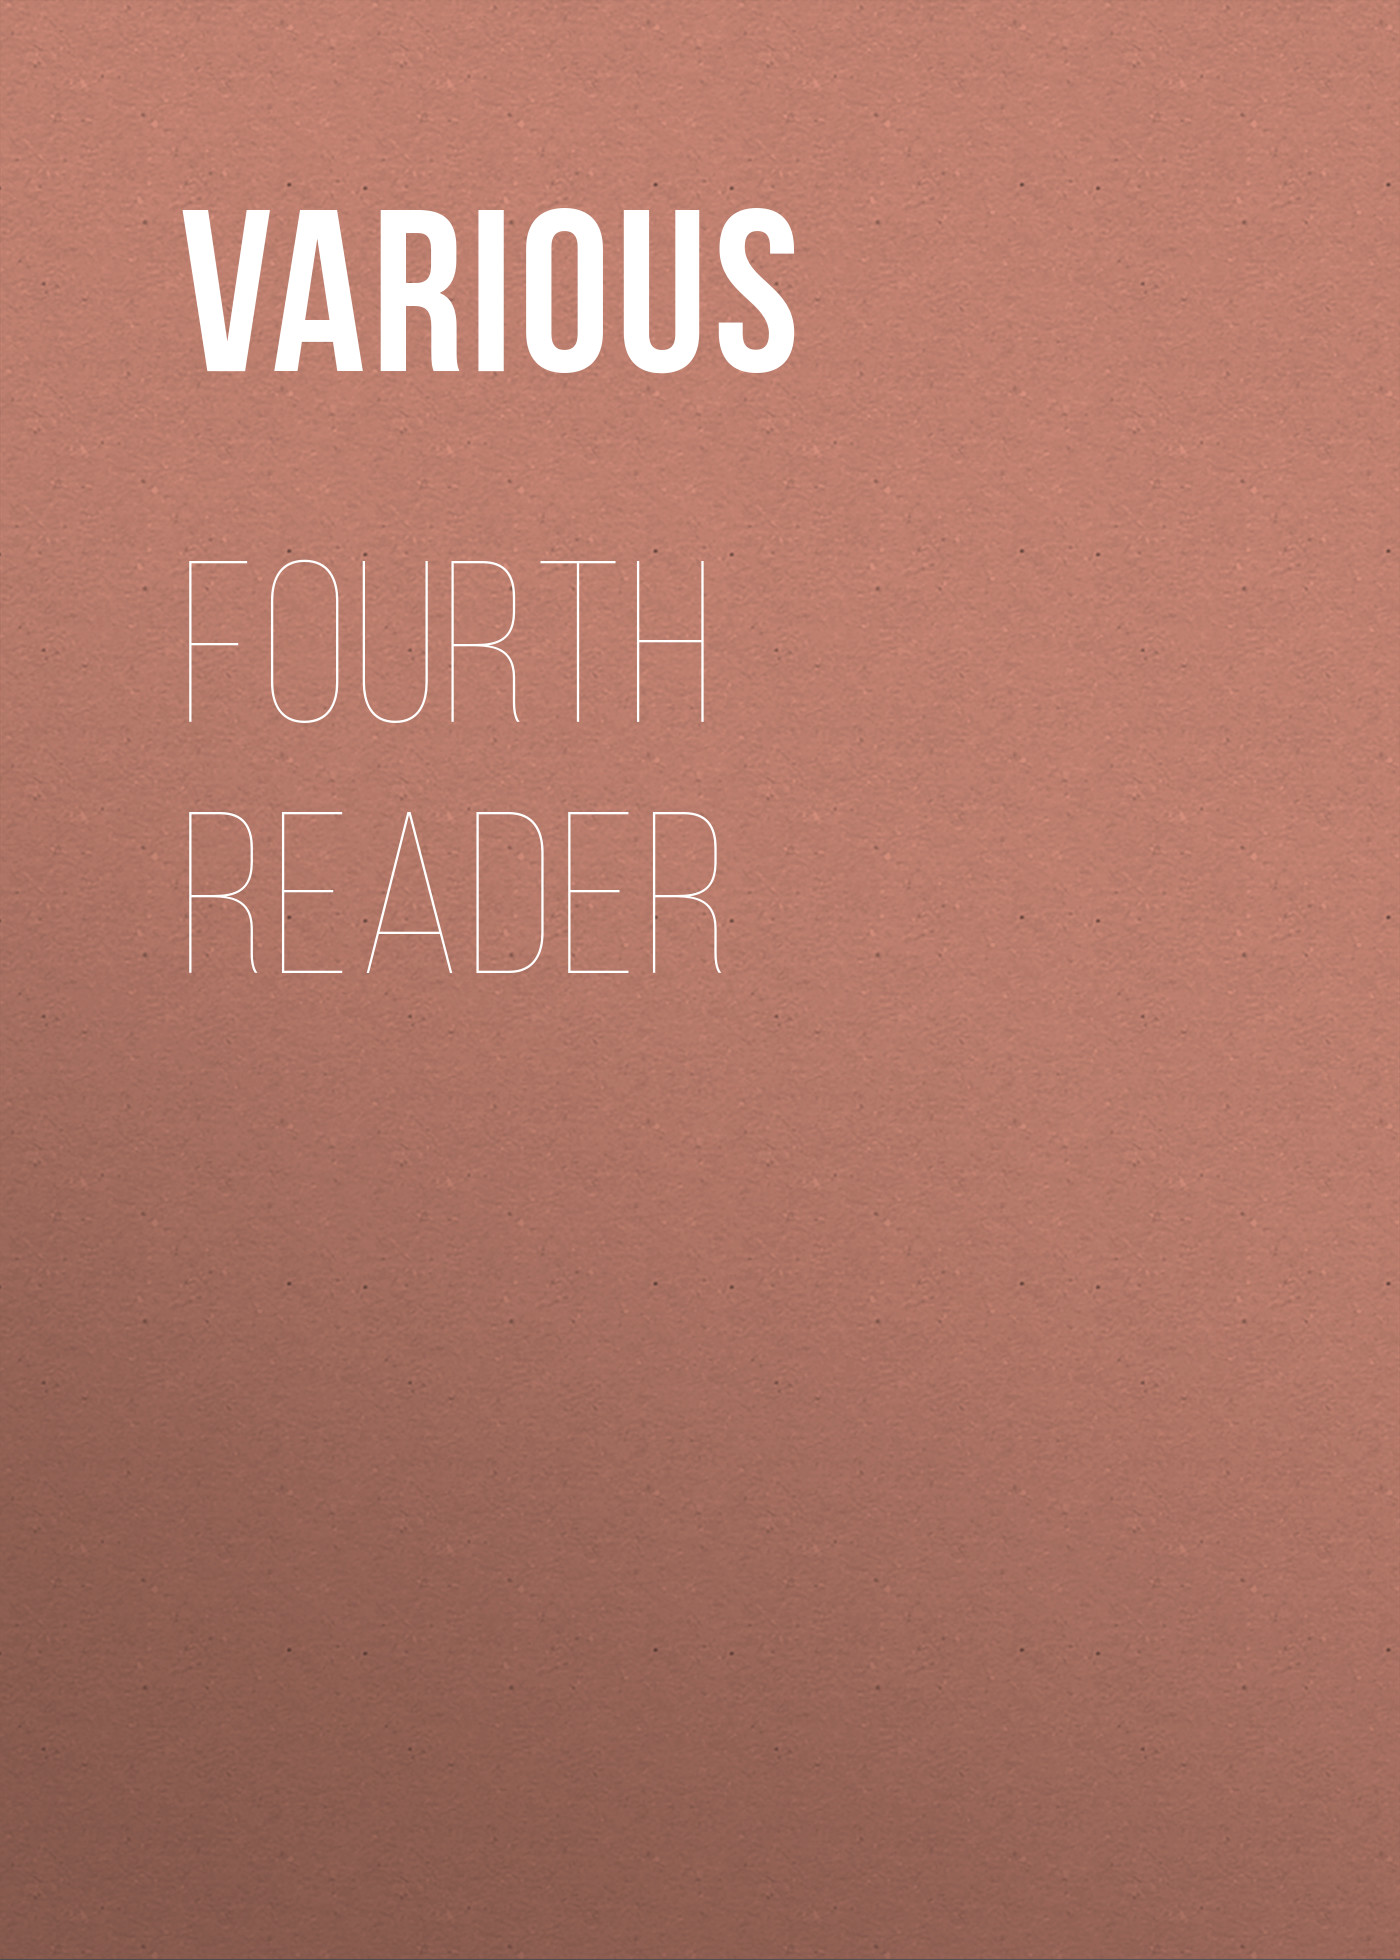 Книга Fourth Reader из серии , созданная  Various, может относится к жанру Зарубежная классика. Стоимость электронной книги Fourth Reader с идентификатором 25715371 составляет 0 руб.